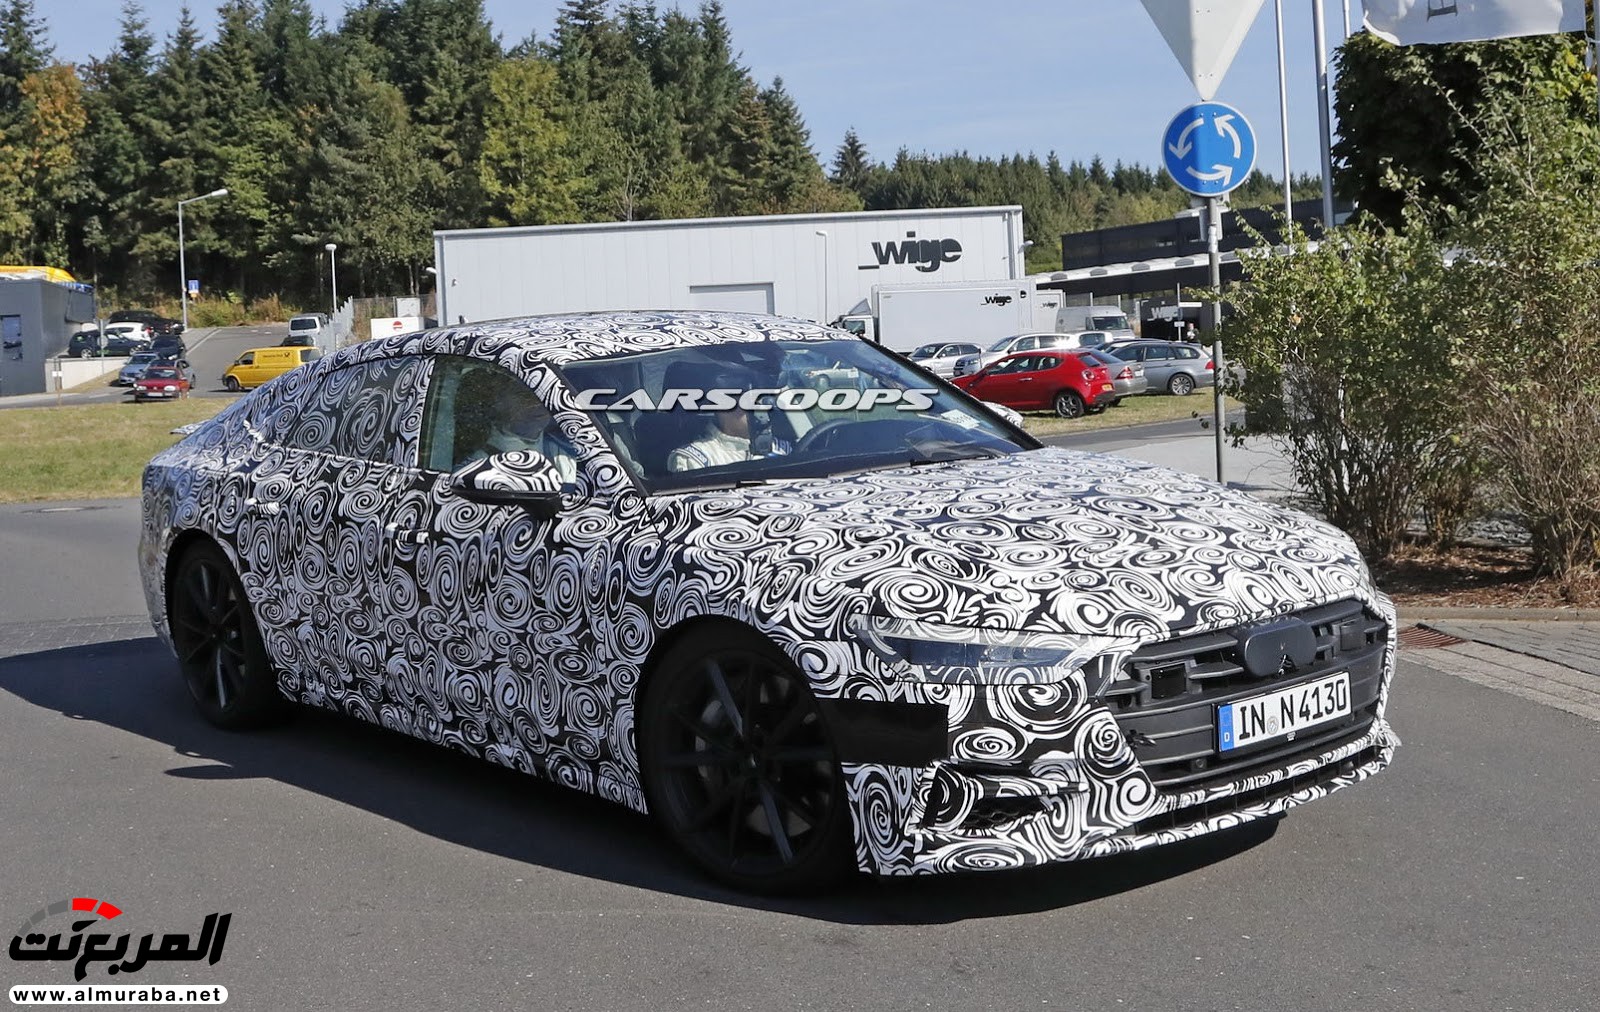 أودي A7 الجديدة كليا 2018 تصل في سبتمبر المقبل بنسخة ذات مكونات هجينة ضمن نطاقها Audi 12